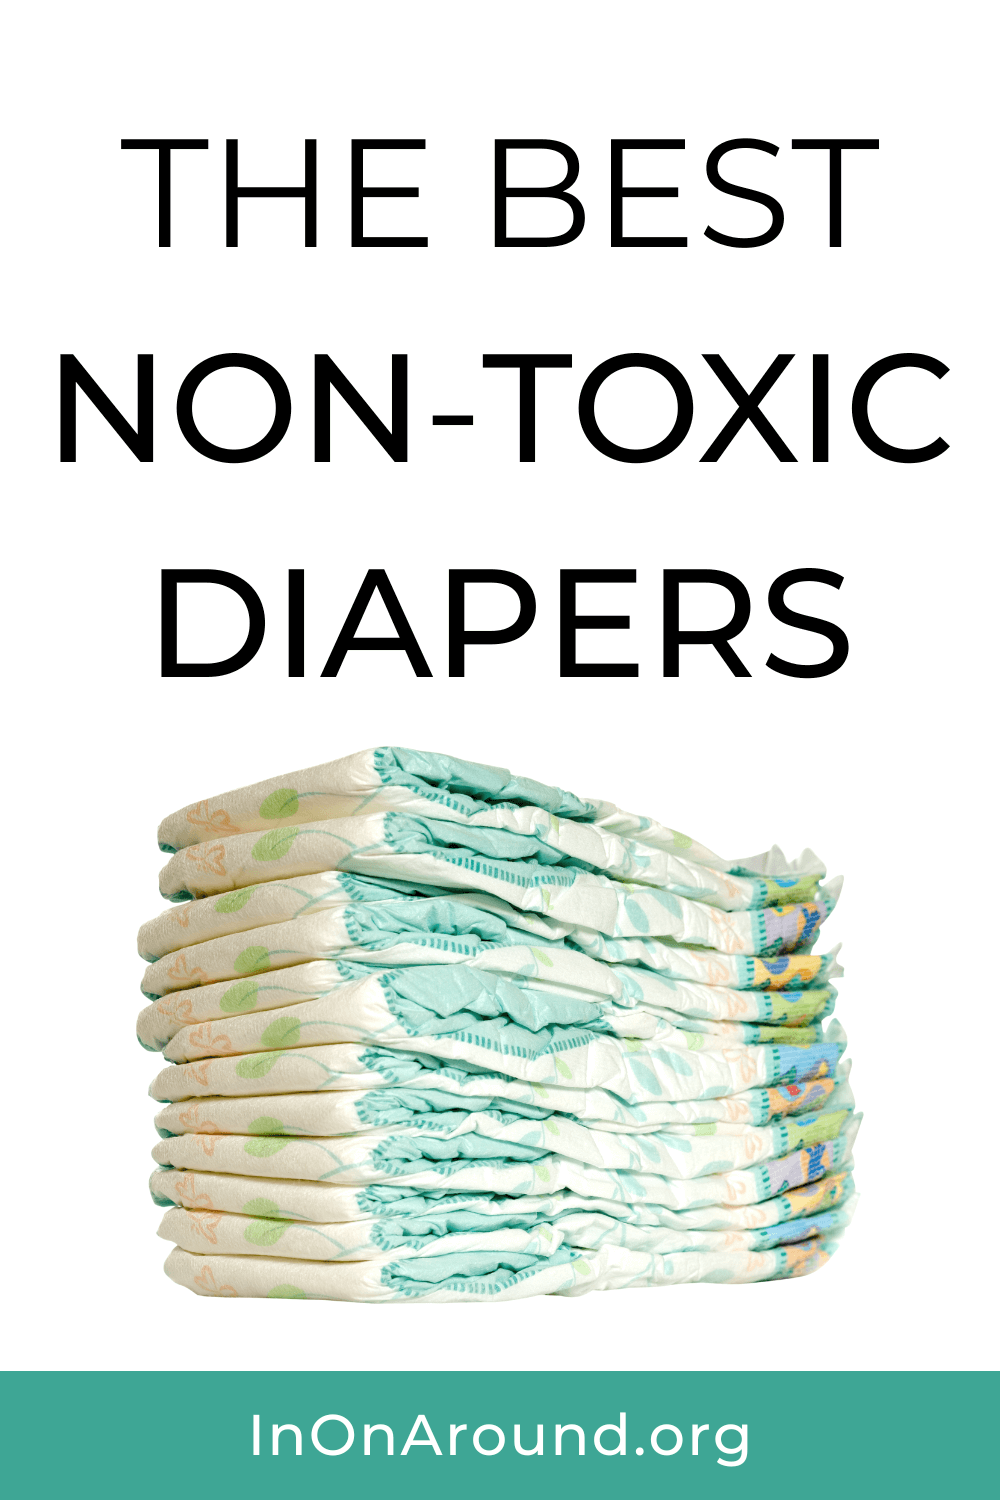 Non-Toxic Diaper Brands